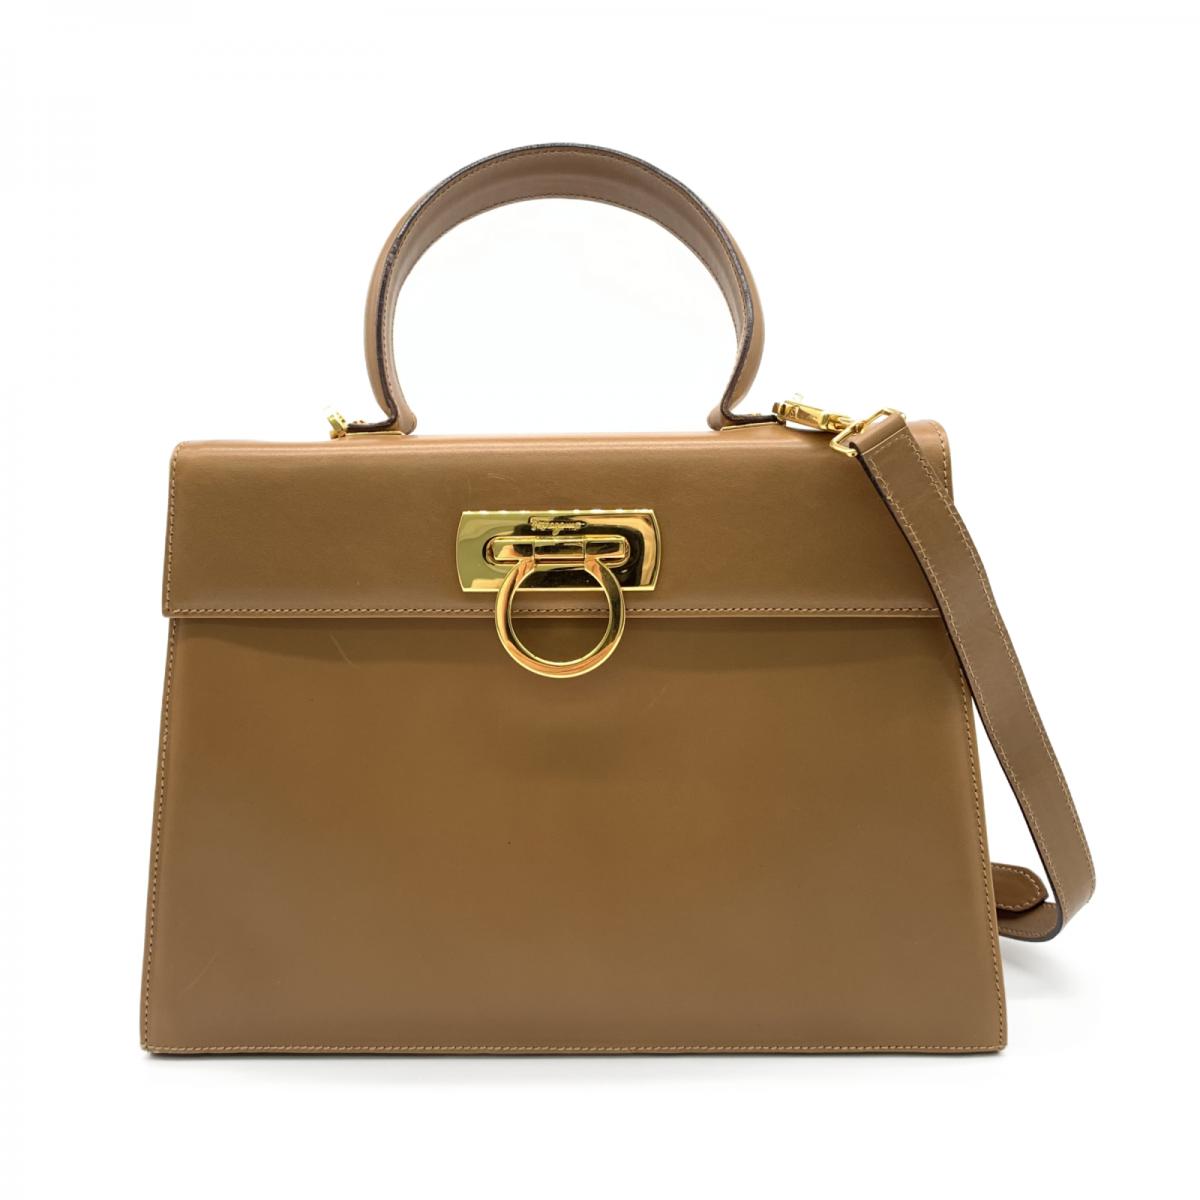 Gancini Iconic Top Handle Bag